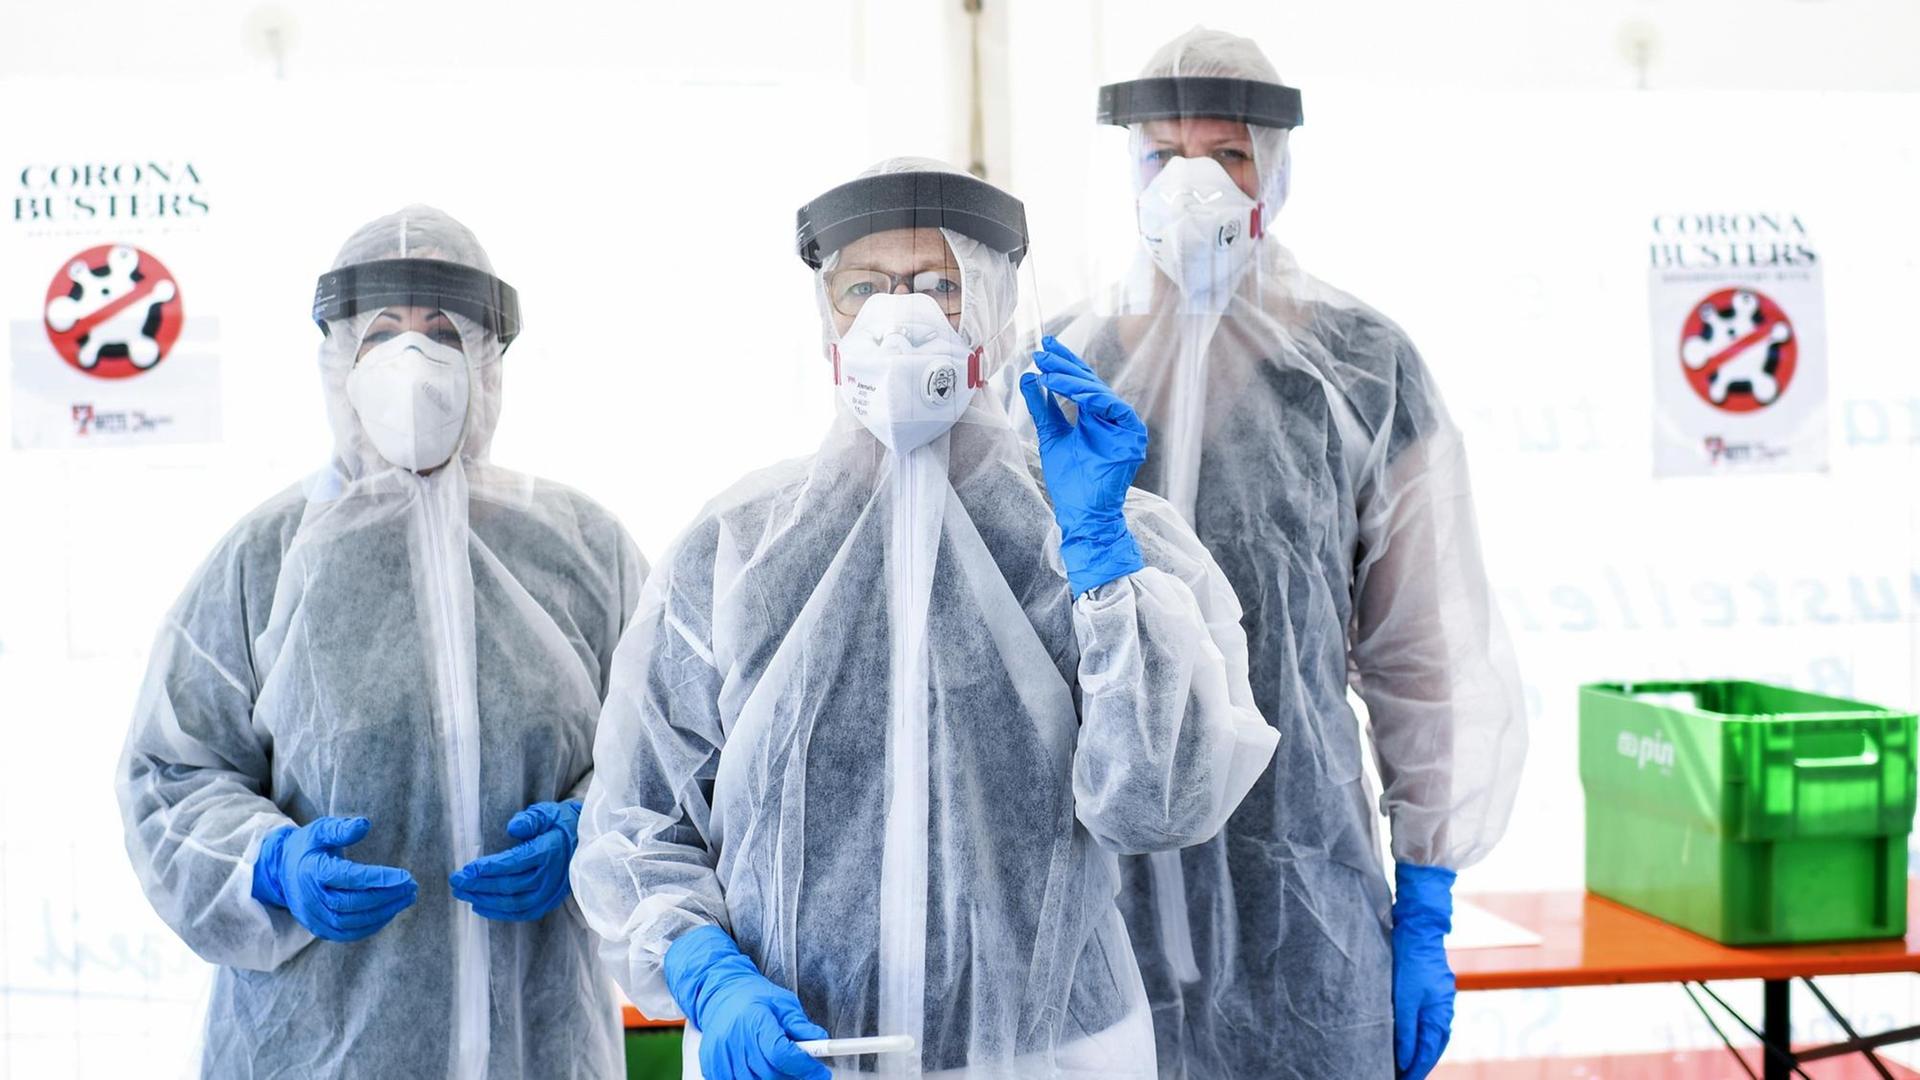 Drei Mitarbeiter vom Gesundheitsamt in Berlin Mitte stehen in Schutzkleidung, in der ambulanten Corona-Test- Einrichtung.